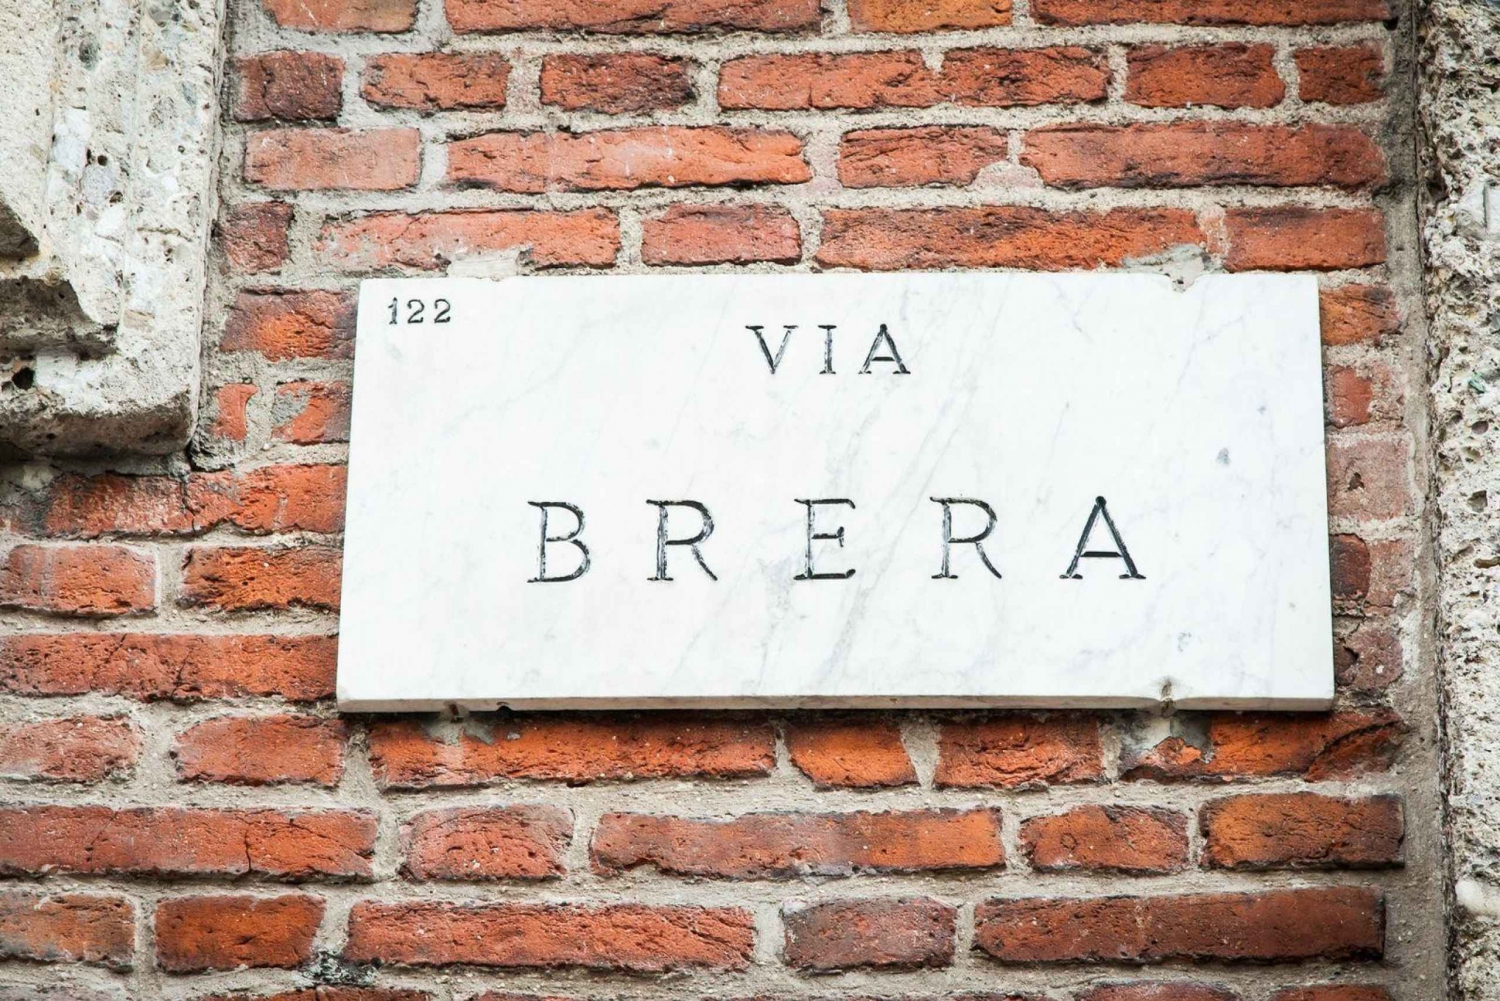 Milan: Pinacoteca & Brera Audio Tour in English (NO TICKET)